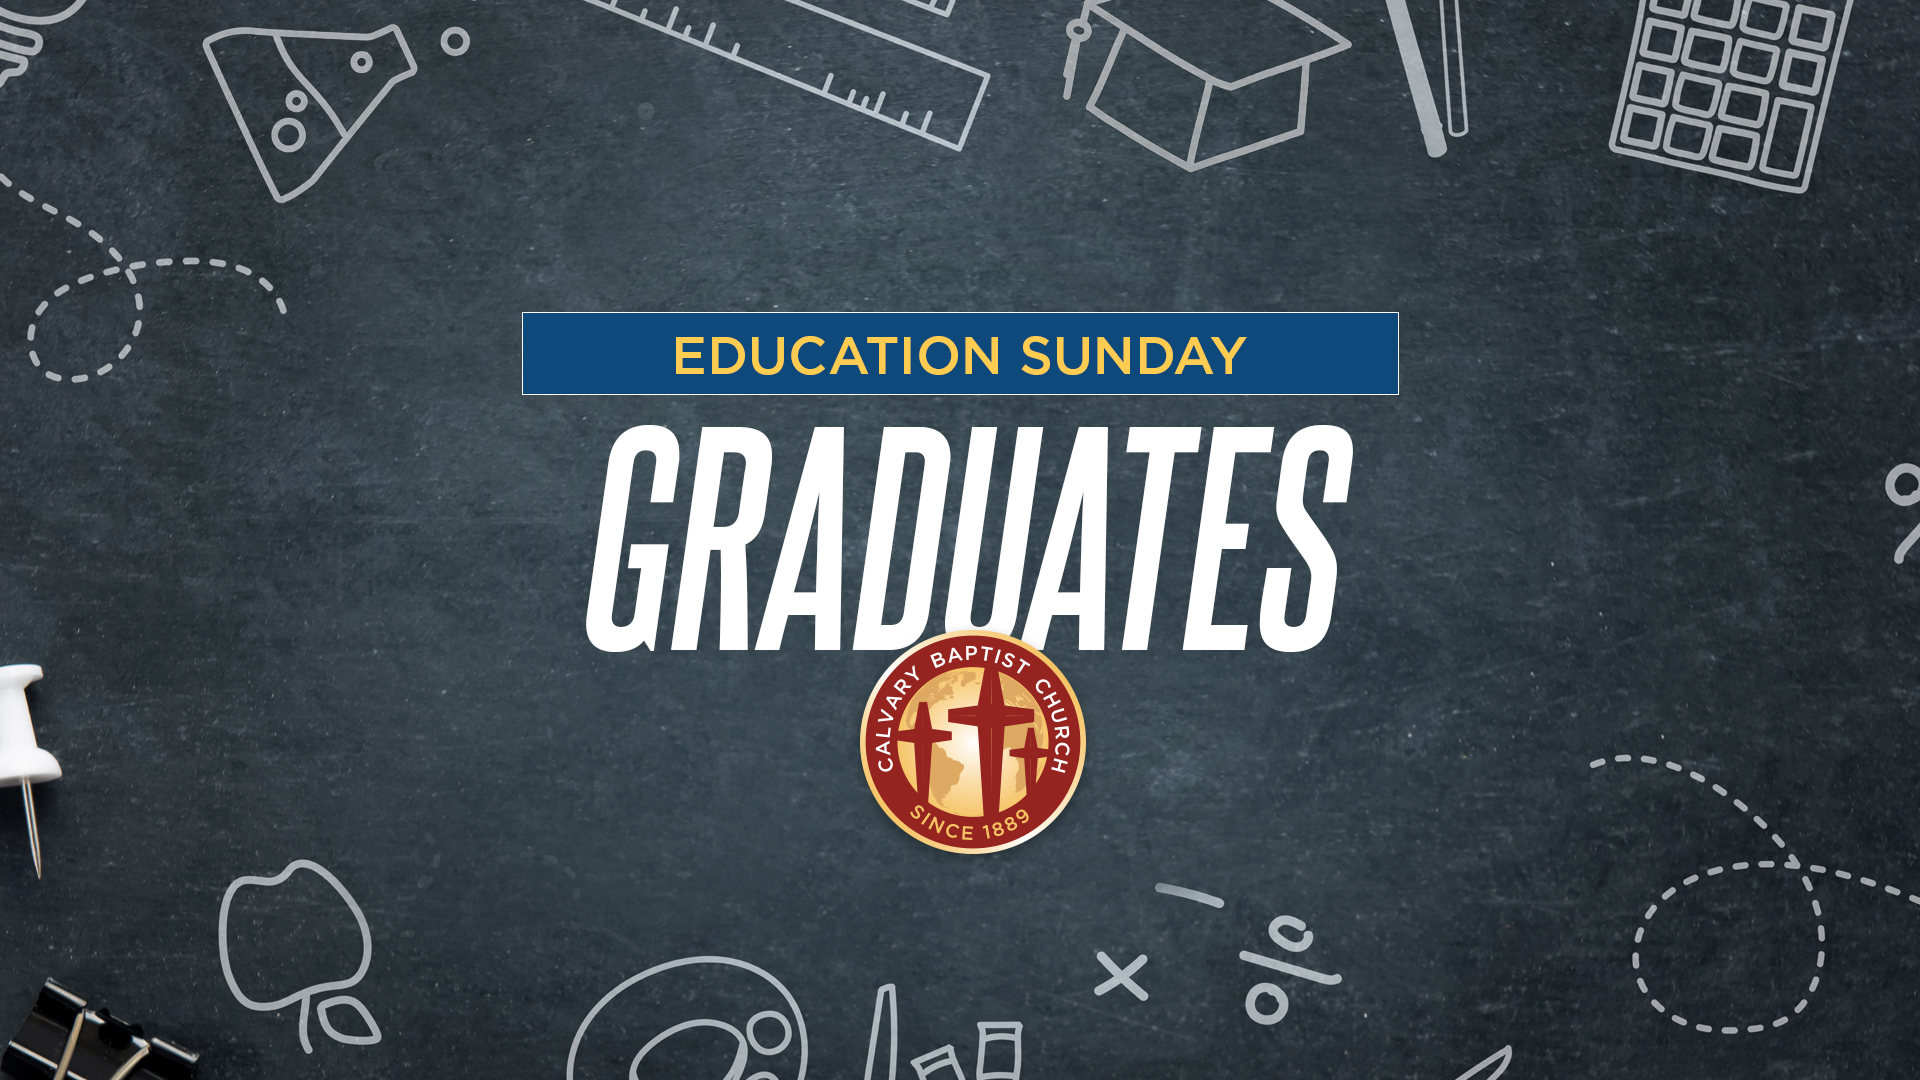 Education Sunday Graduates